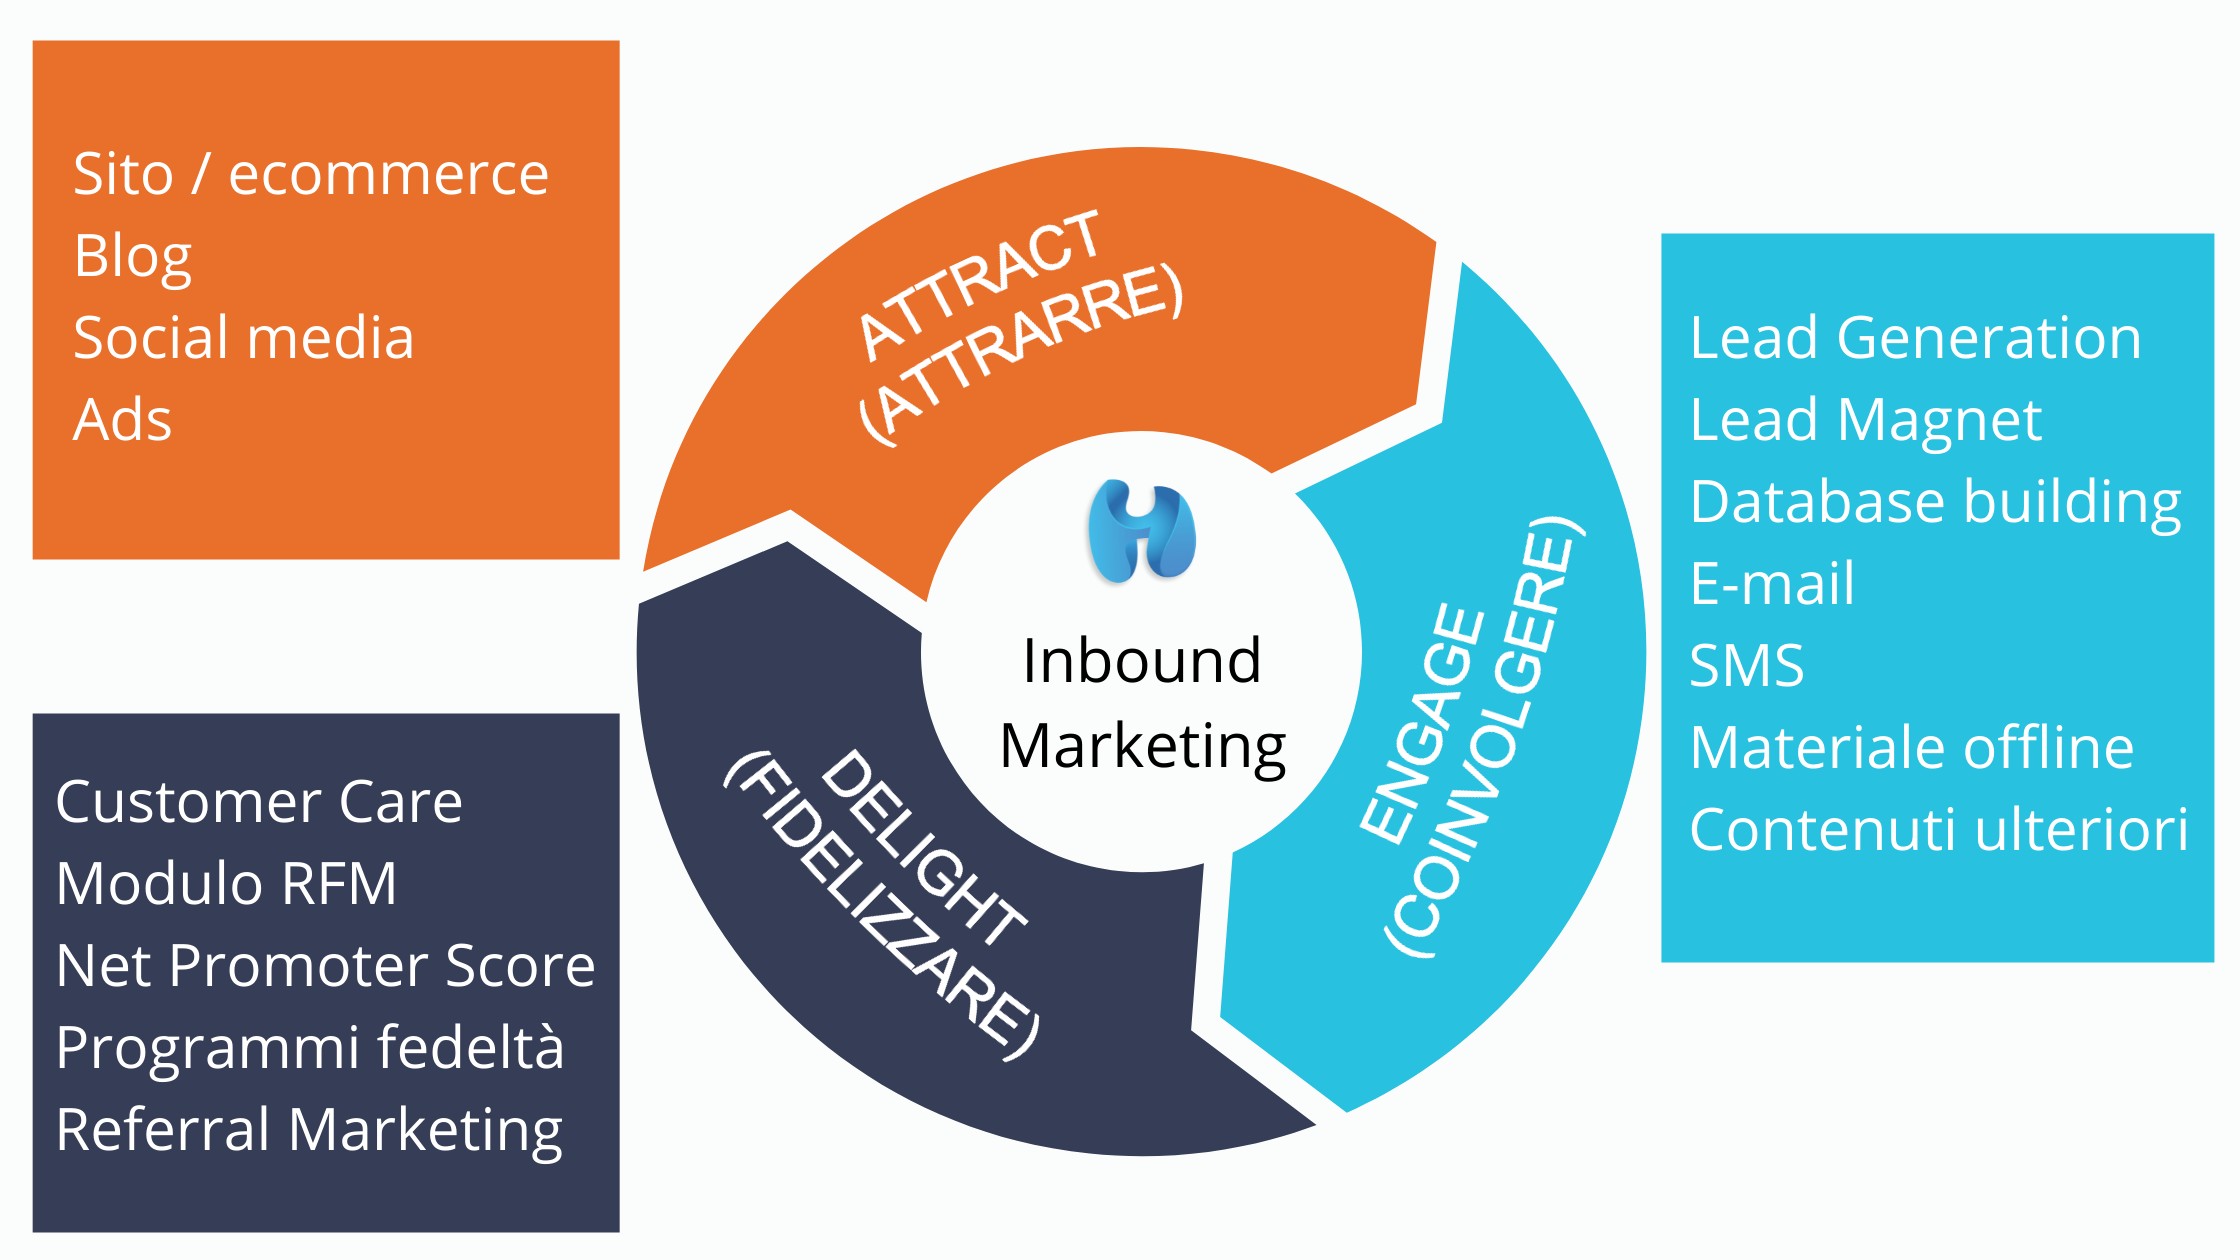 inbound marketing hubspot